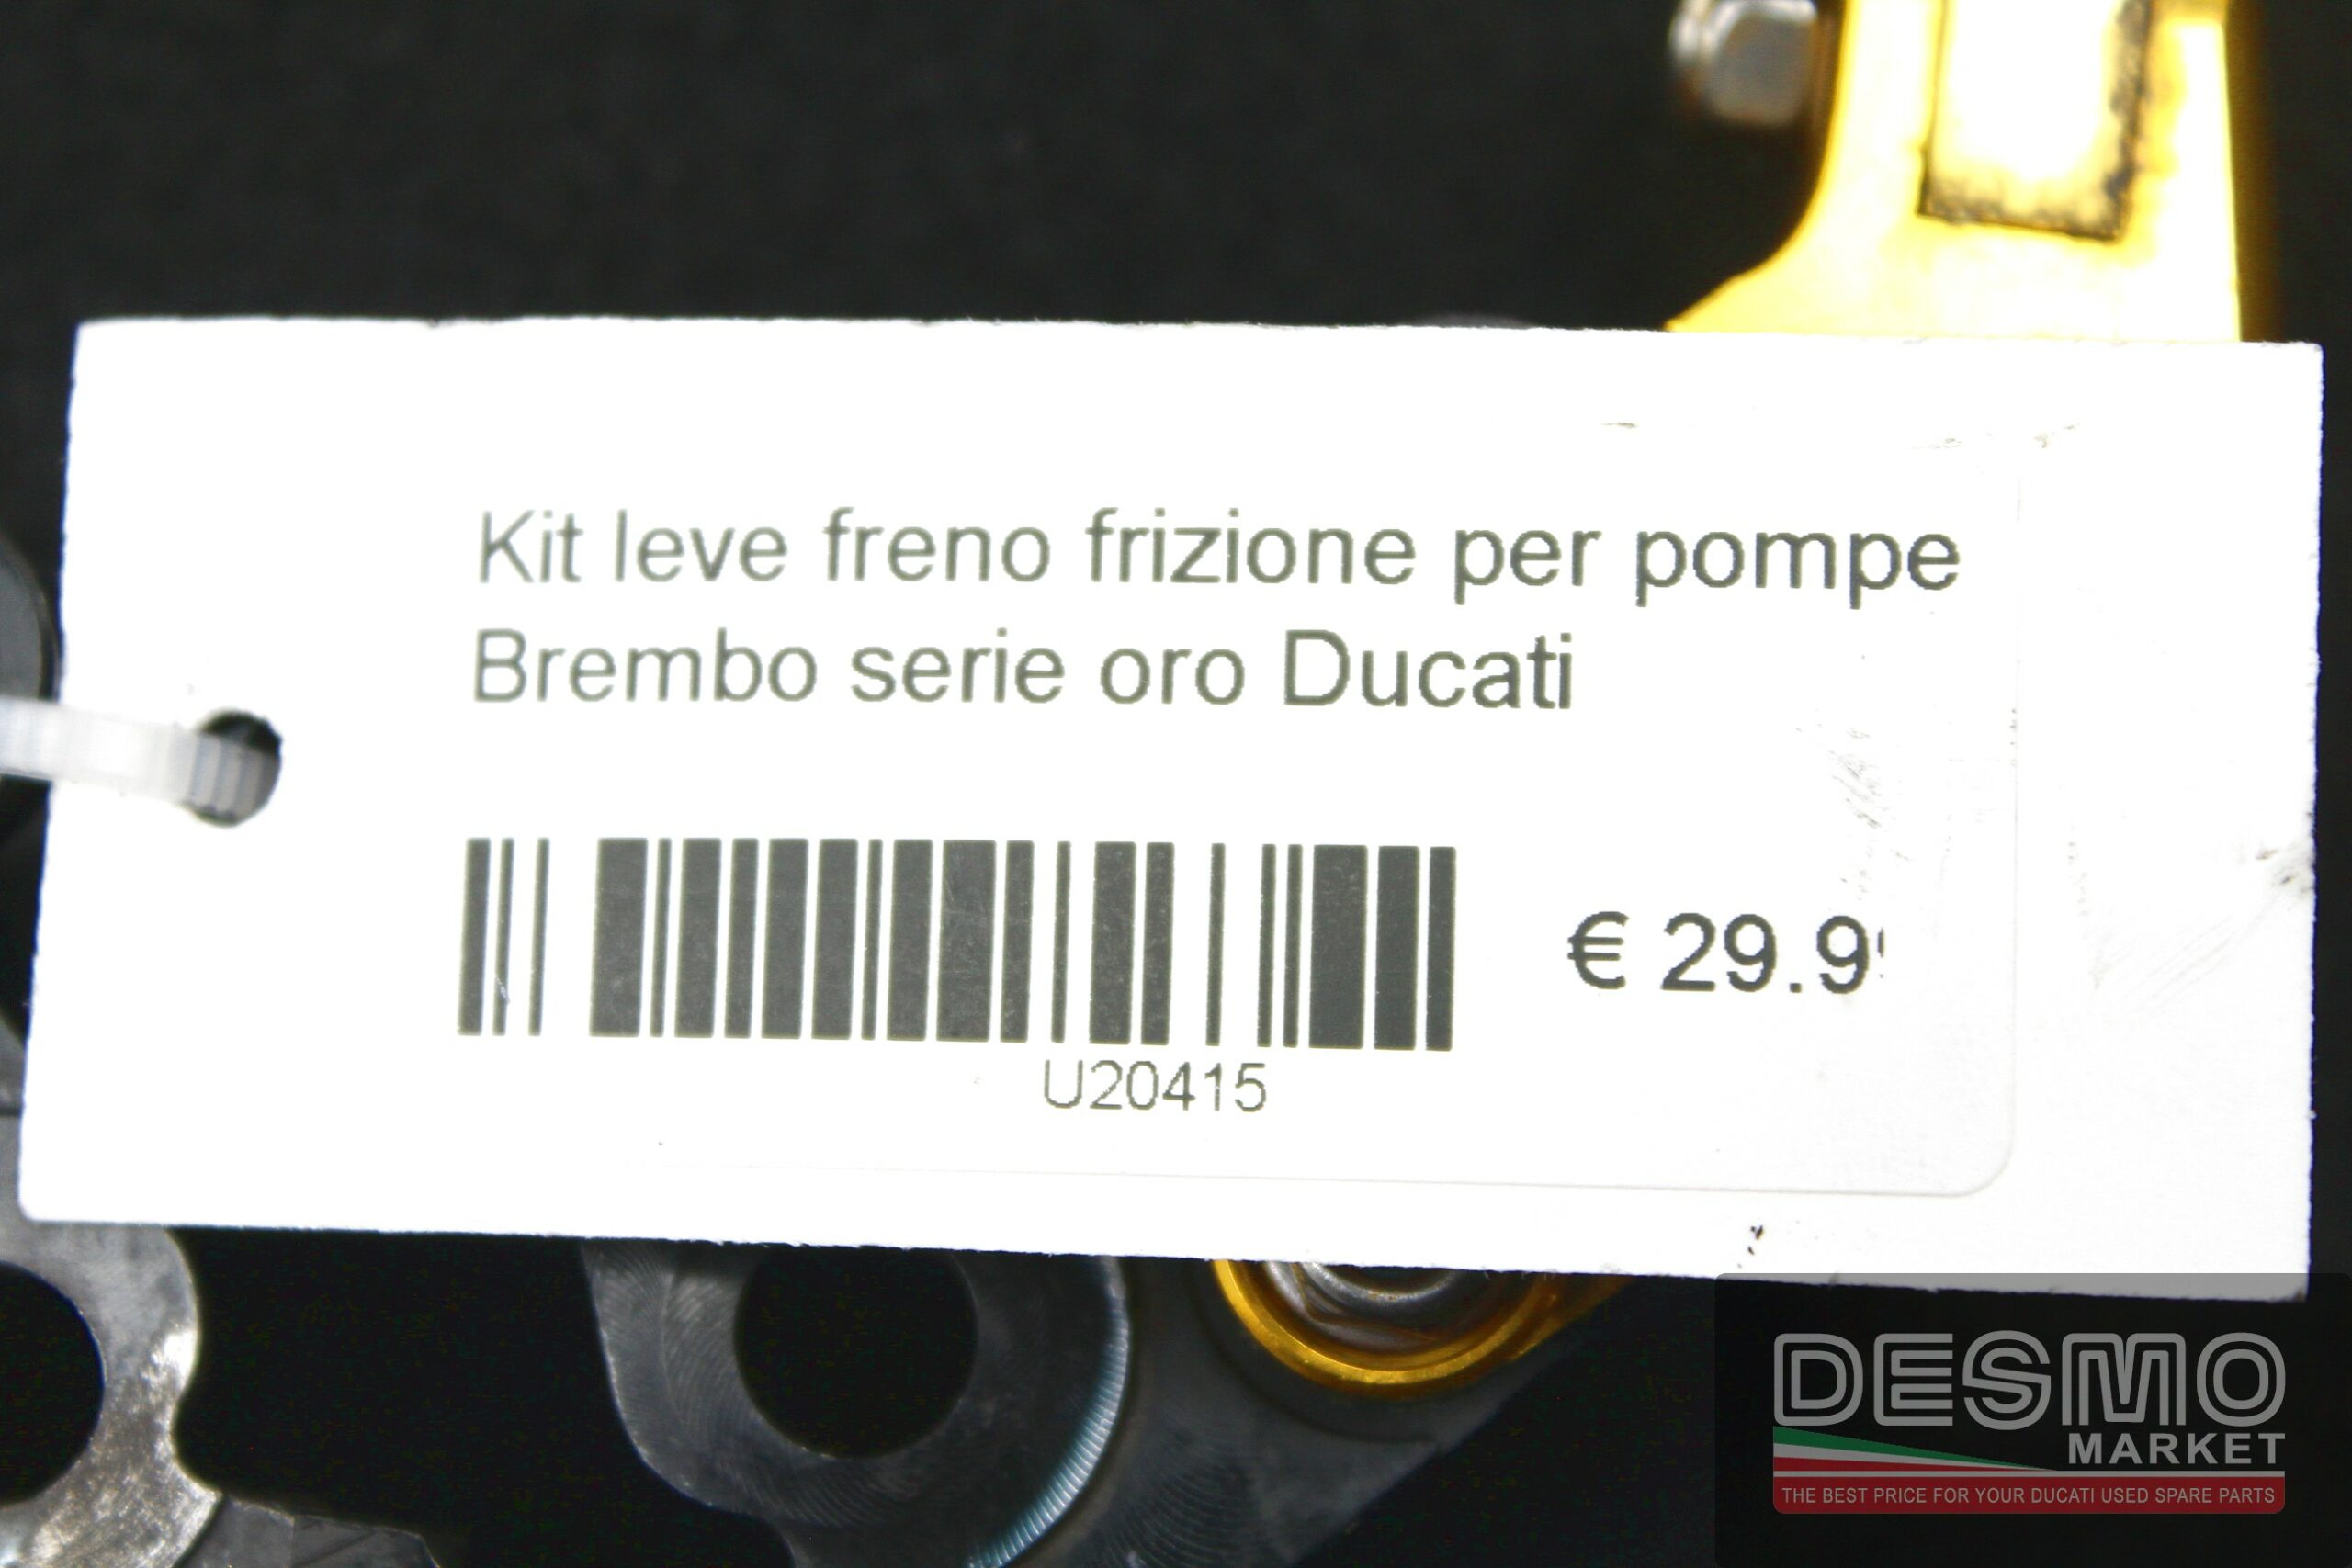 Kit leve freno frizione per pompe Brembo serie oro Ducati